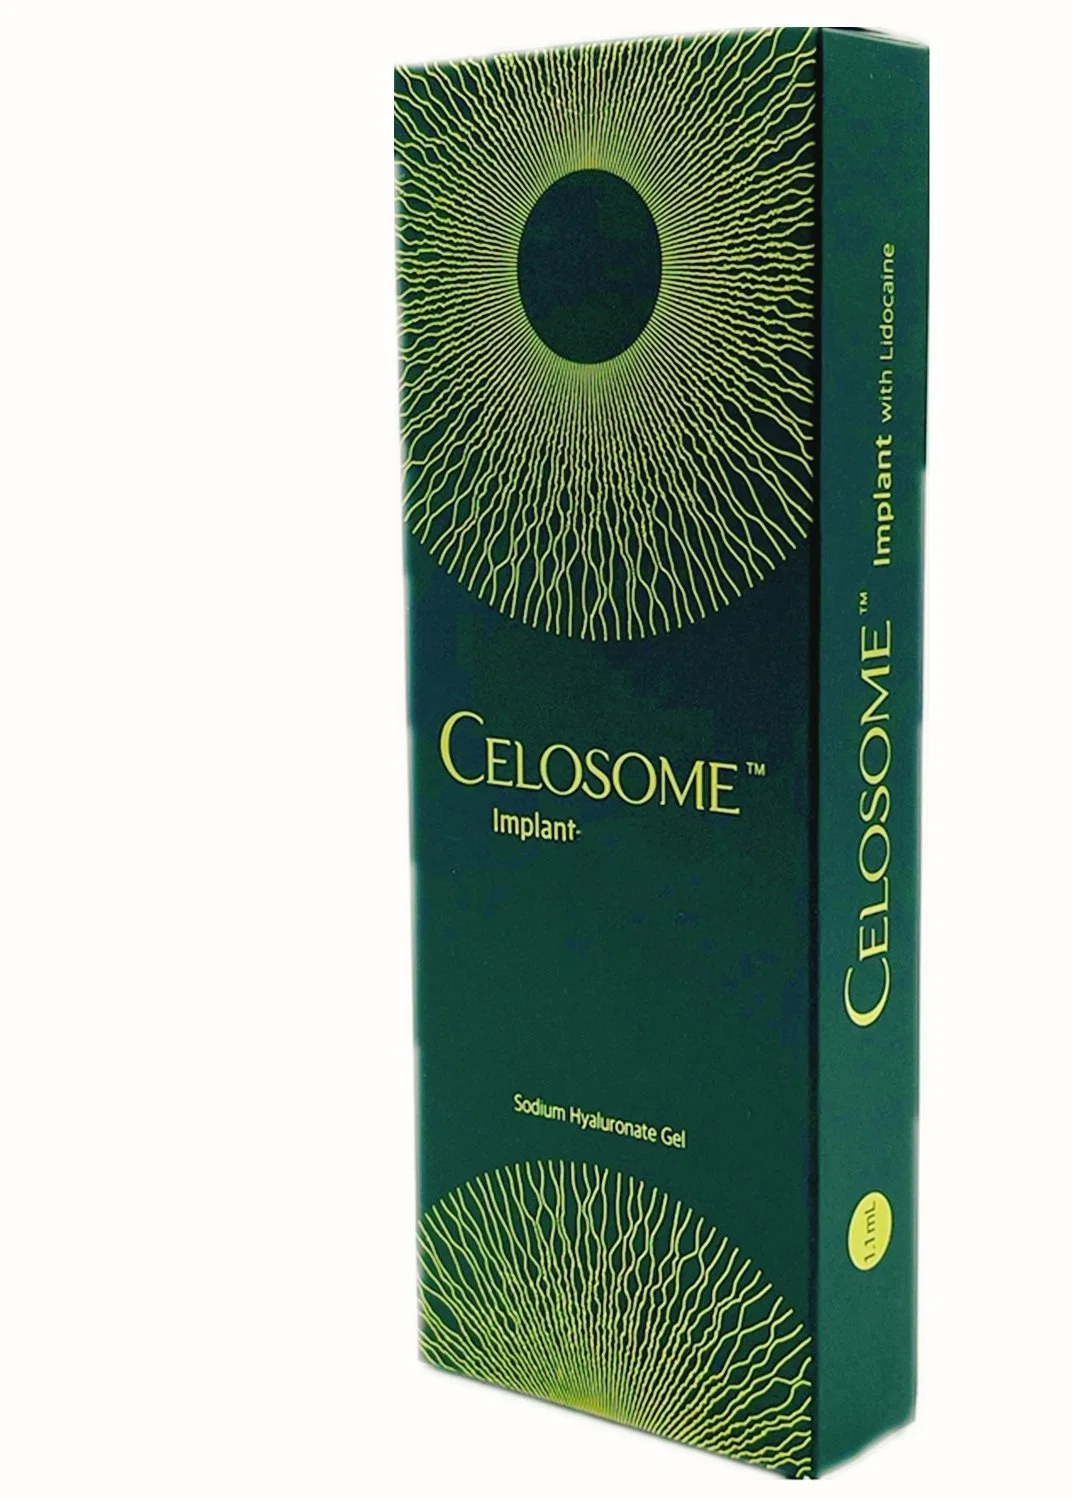 Celosome X-shape Гиалуроновая кислота 10 мл для инъекций сливочного масла укрупнение сливочного масла Инъекция Укрупненность Крем для Celosome Усиление груди инъекция Упашная грудка